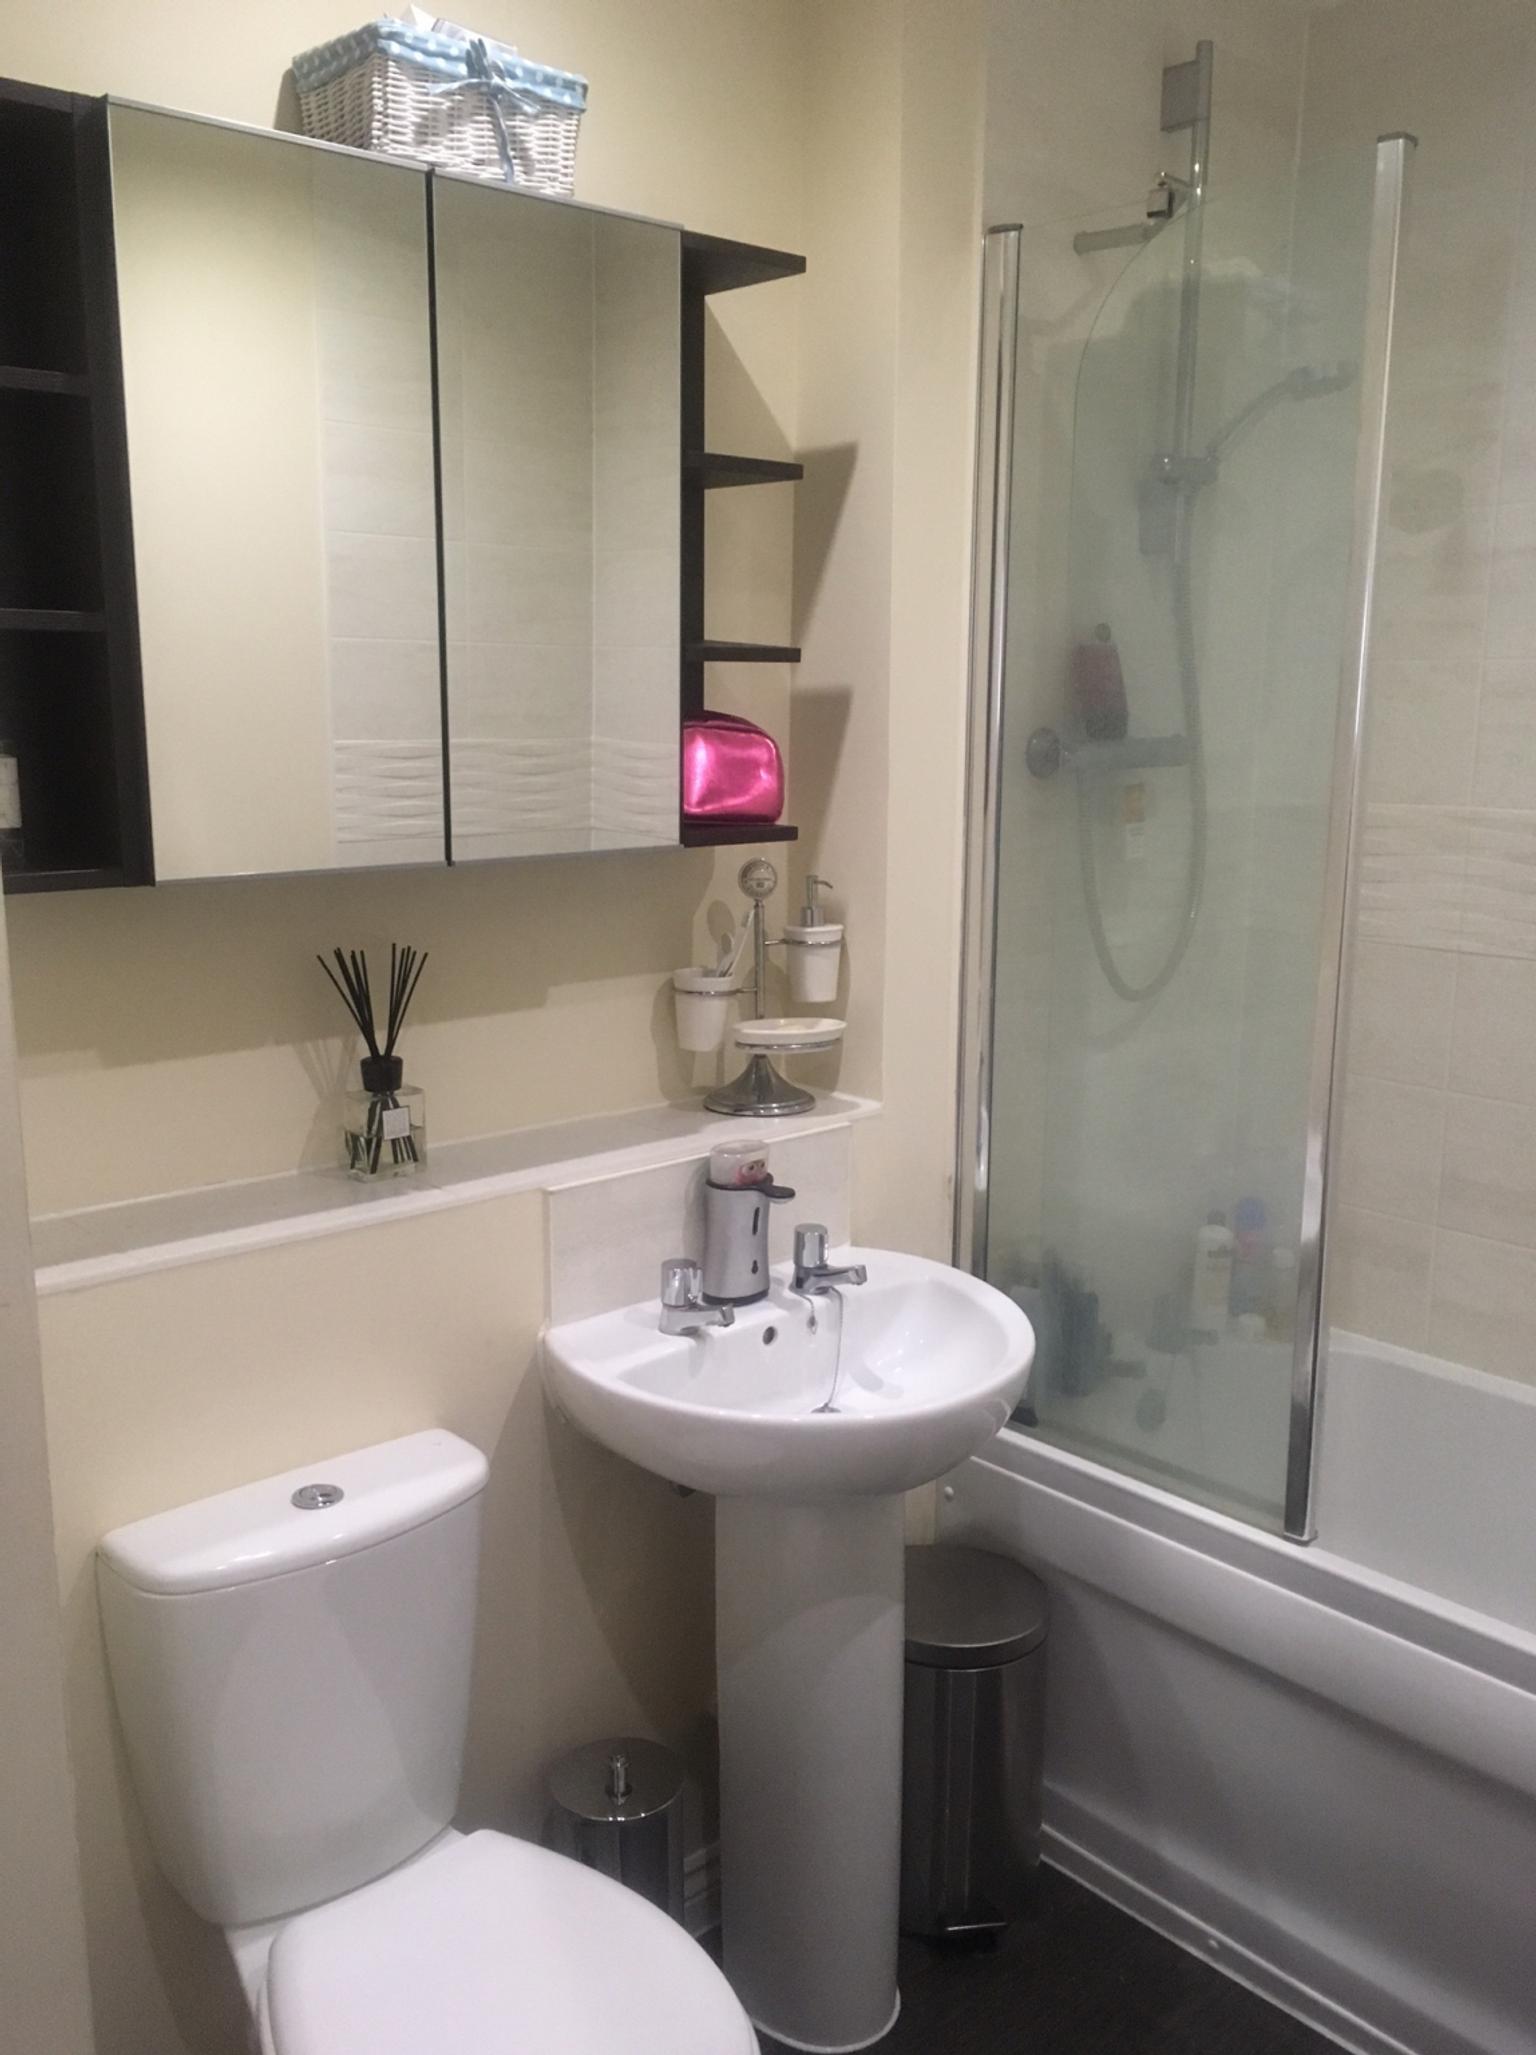 Ikea Double Bathroom Cabinet Lillangen In N1 London For 50 00 For